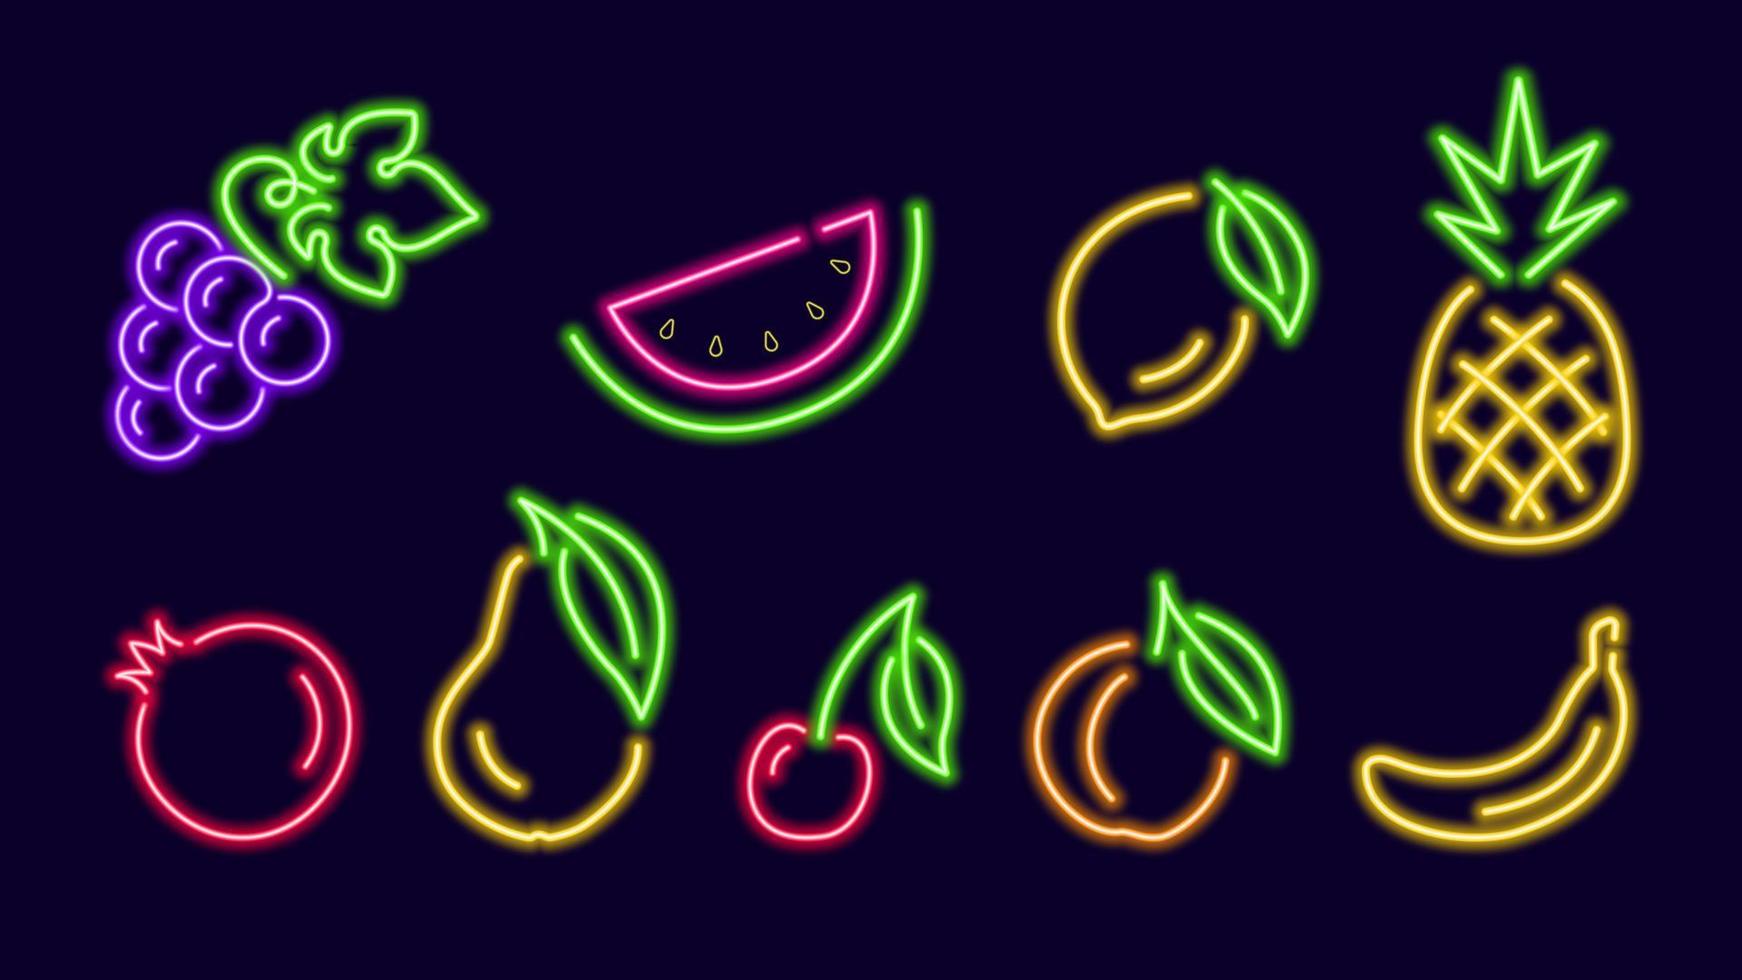 kleurrijke neon gloeiende vruchten één regel. plakje watermeloen met rode granaatappel en takje kersen. gele banaan met tros blauwe druiven. digitaal ontwerp voor nachtleven vector signage